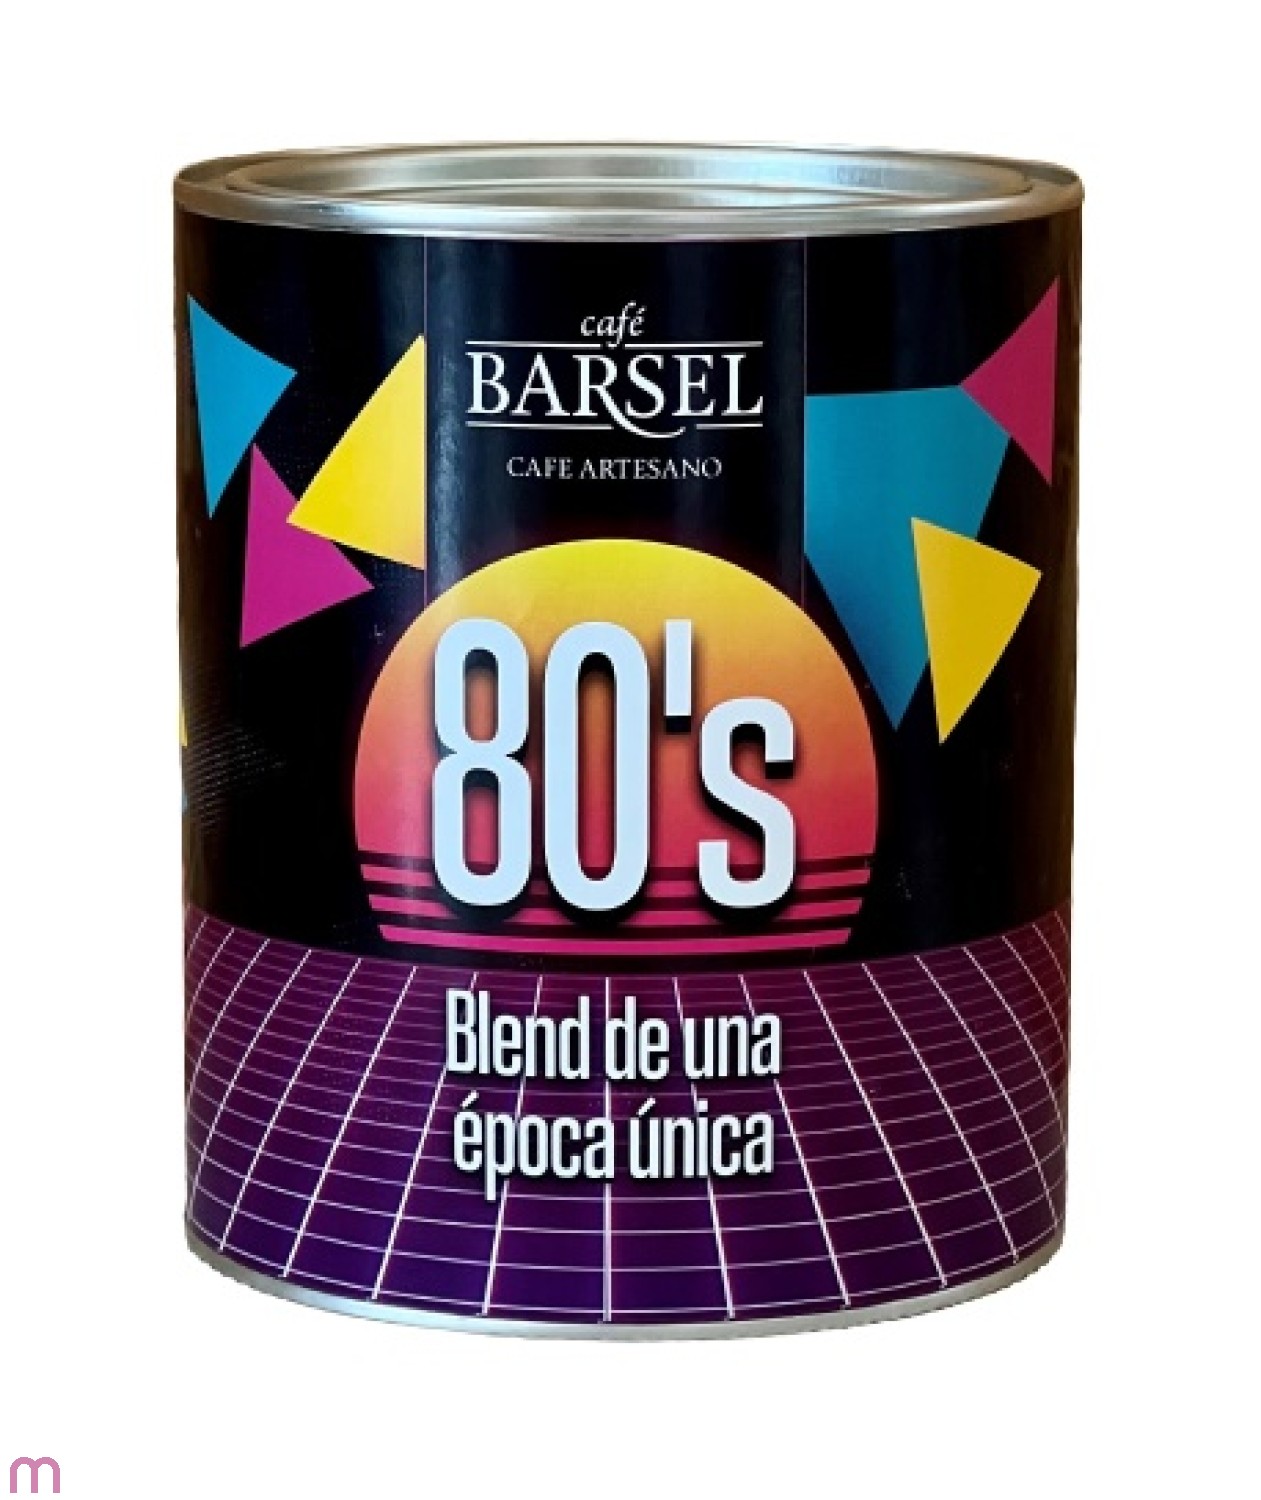 Cafe Barsel Blend 80,s 500 g gemahlen